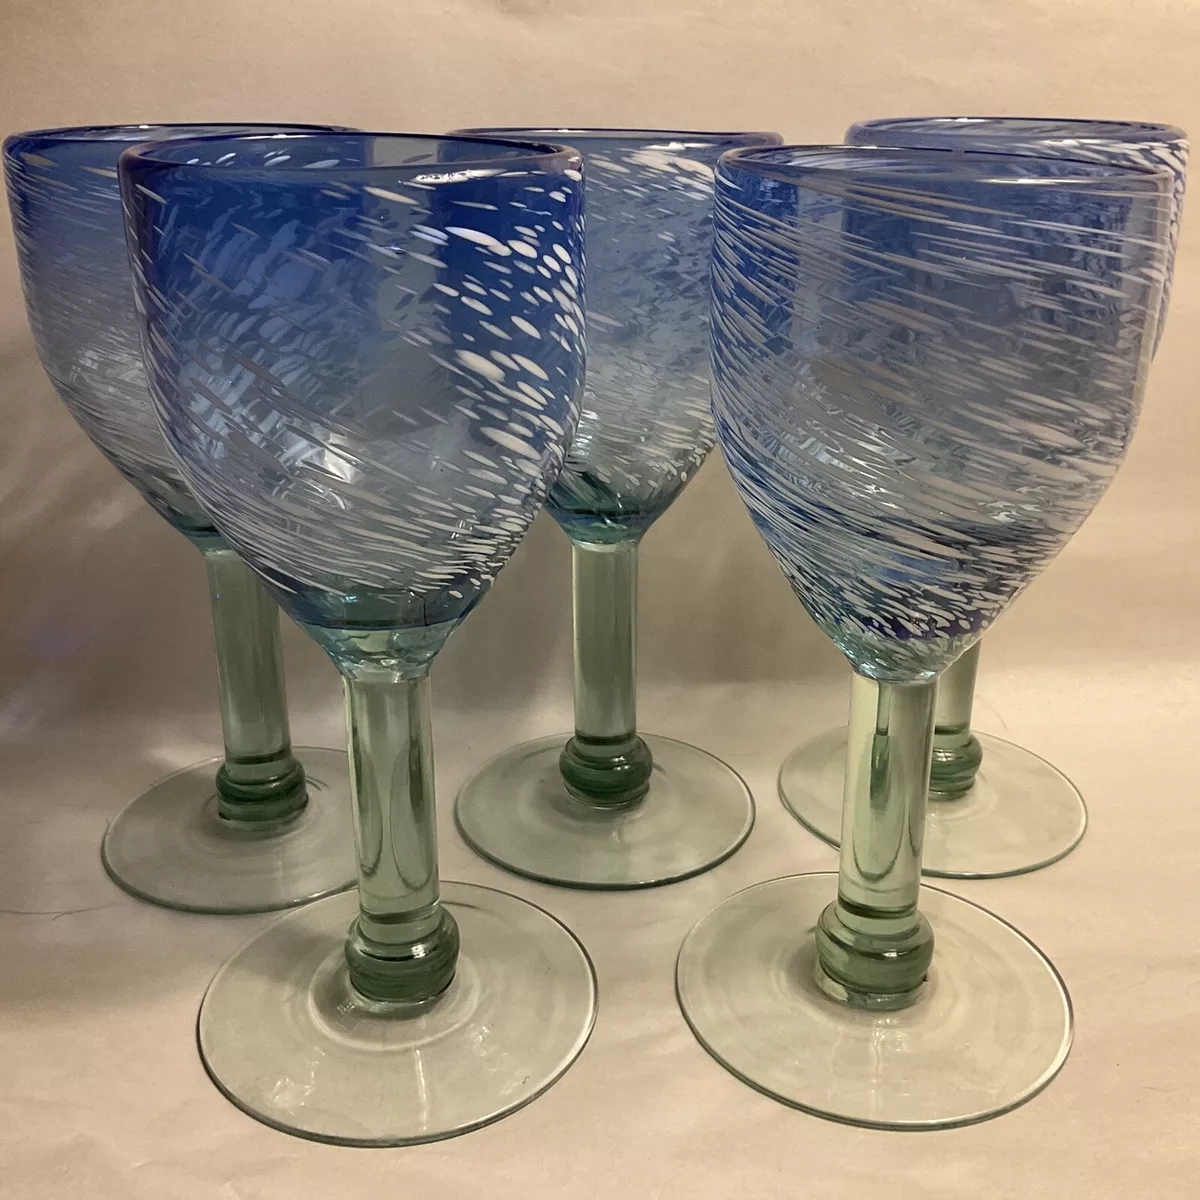 Set Of 5 Heavy Wine Glasses Beach/Ocean Blue Glass, White Paint, Green Stem